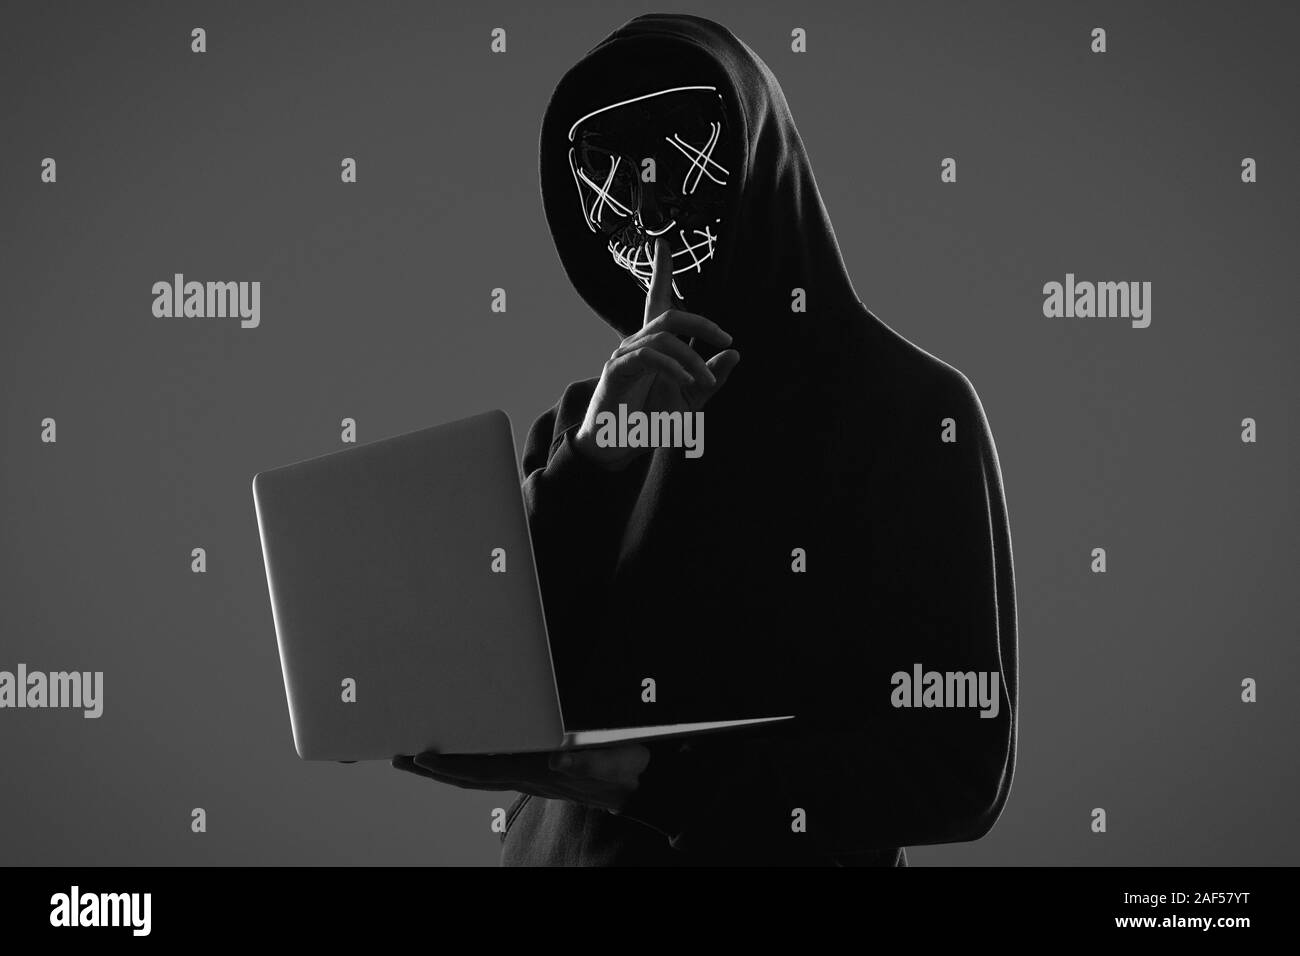 Porträt eines anonymen Mann in einem schwarzen Kapuzenpullover und Neon mask Hacking in einen Computer ein. Studio gedreht. Stockfoto